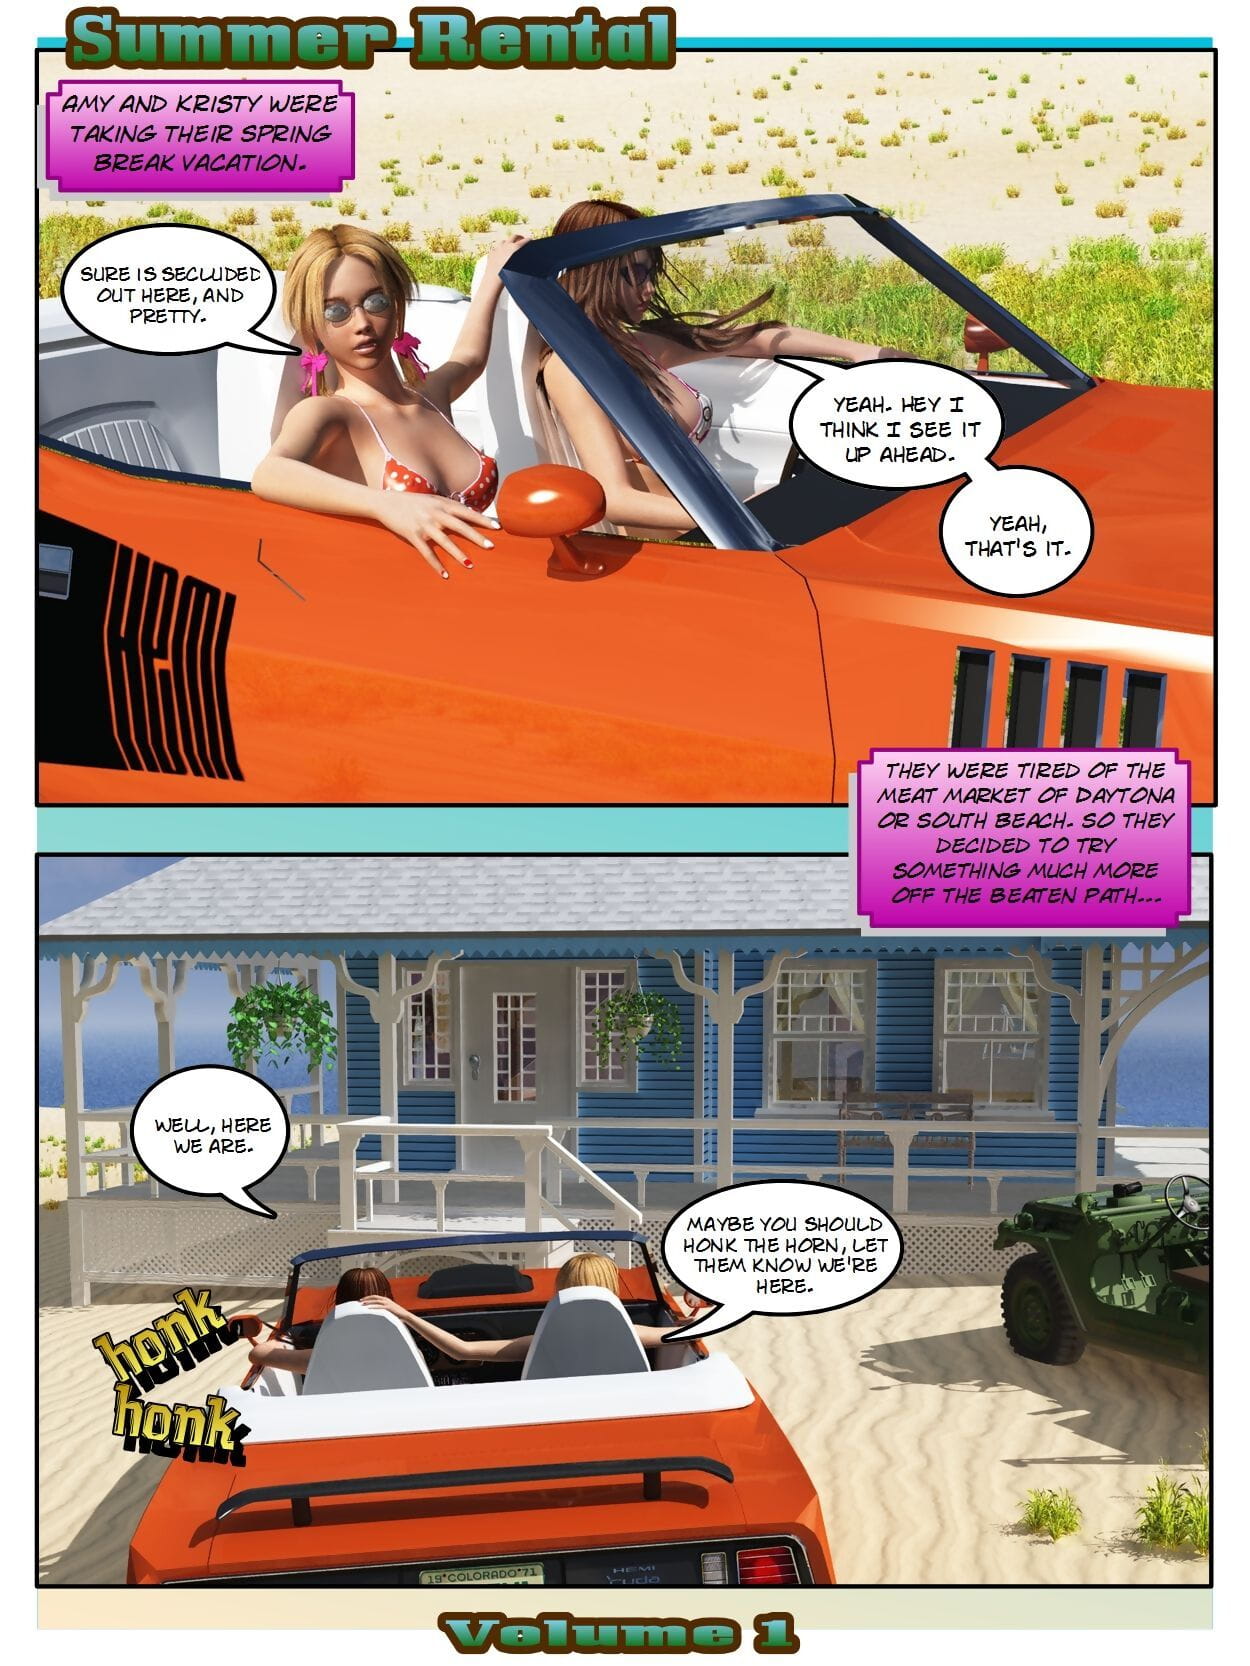 Revenant Summer Rental Vol. 1 page 1